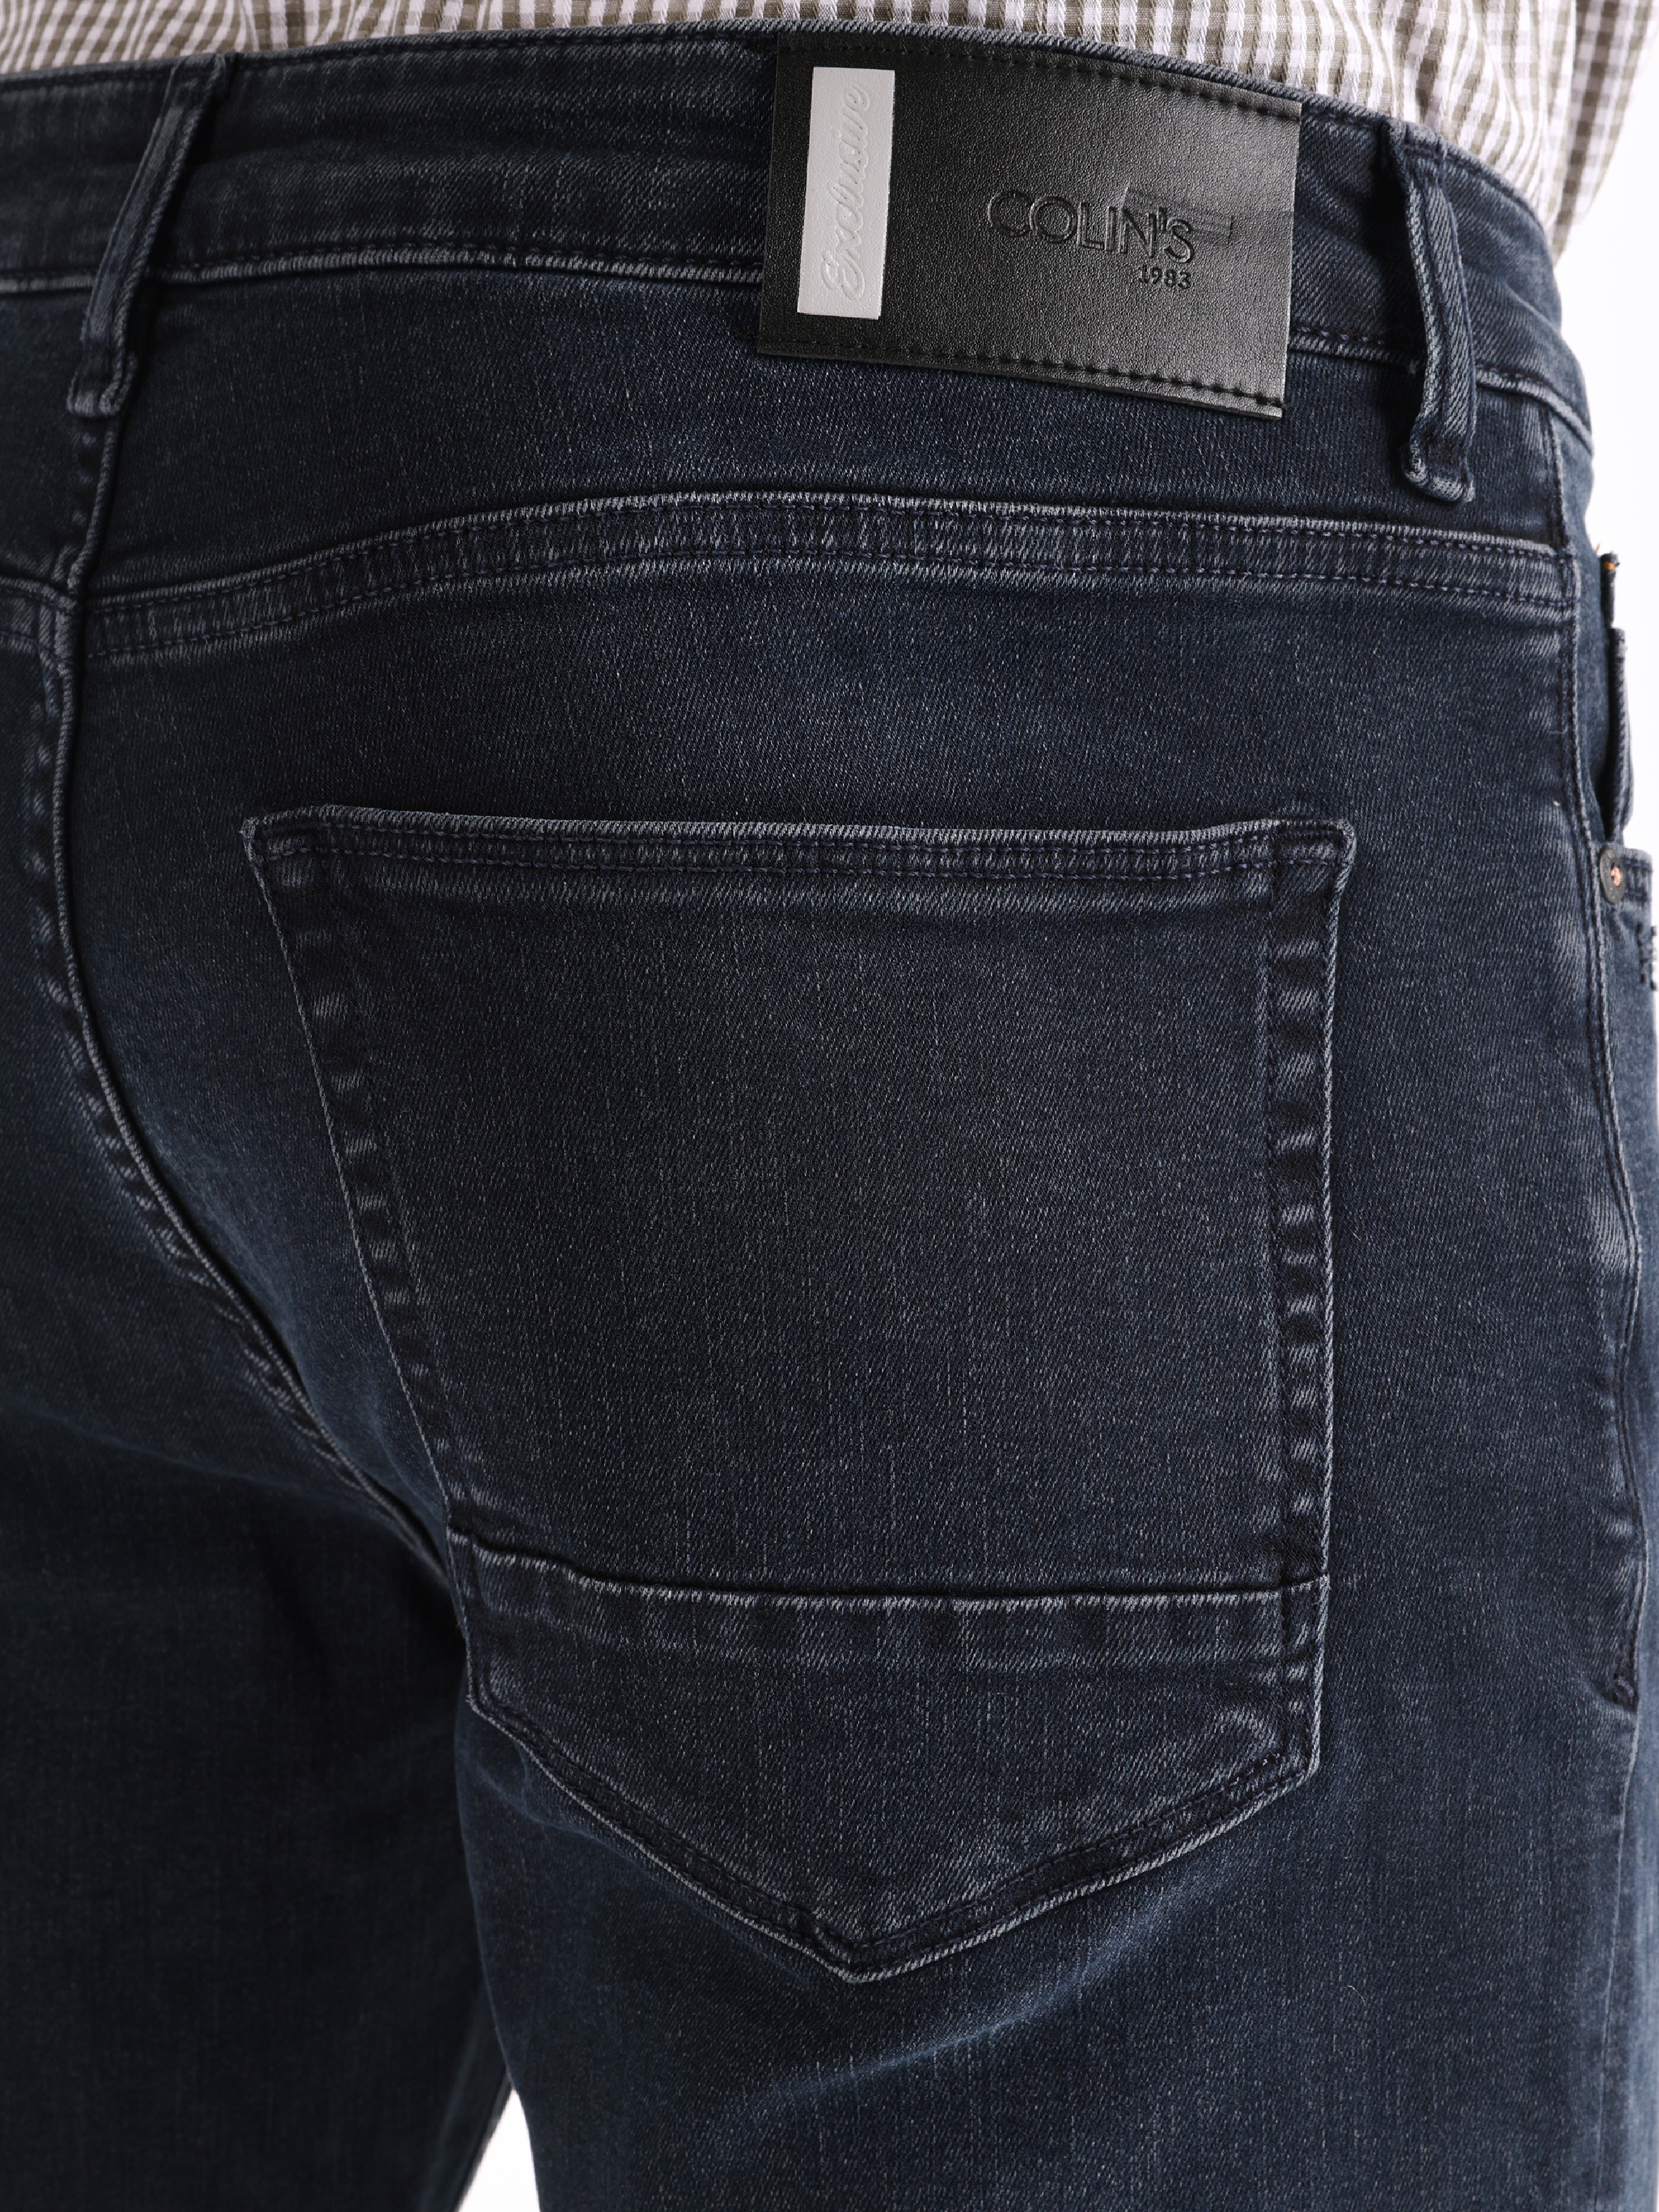 اعرض التفاصيل لـ 044 بنطال جينز كارل ذو قصة عادية وخصر منخفض وساق مستقيمة للرجال